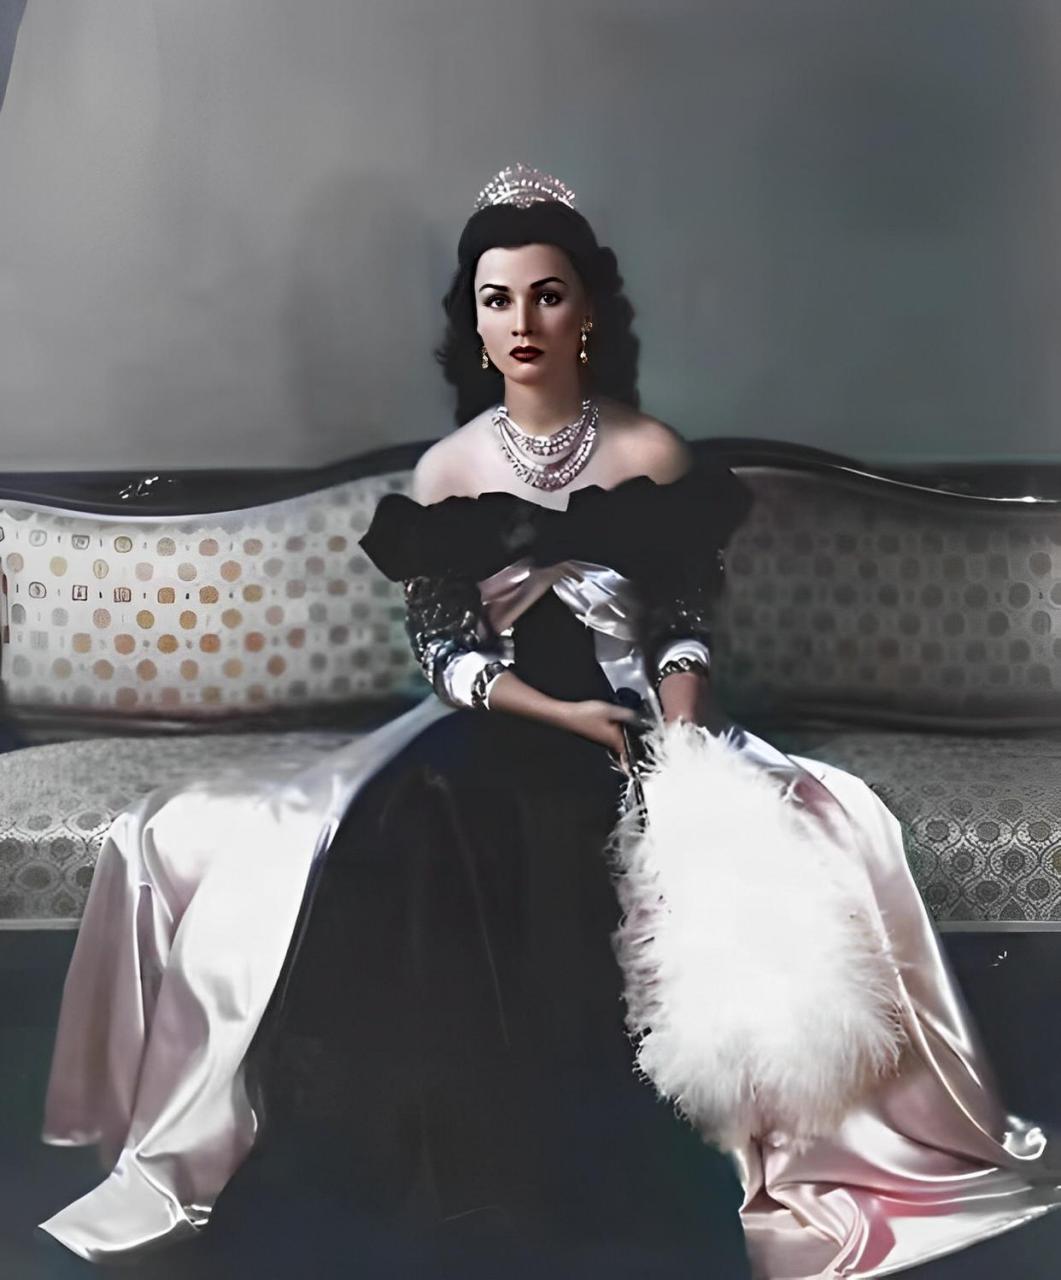 伊朗末代皇后法丝亚,在此之前她本是埃及公主,照片中不难看出她非常